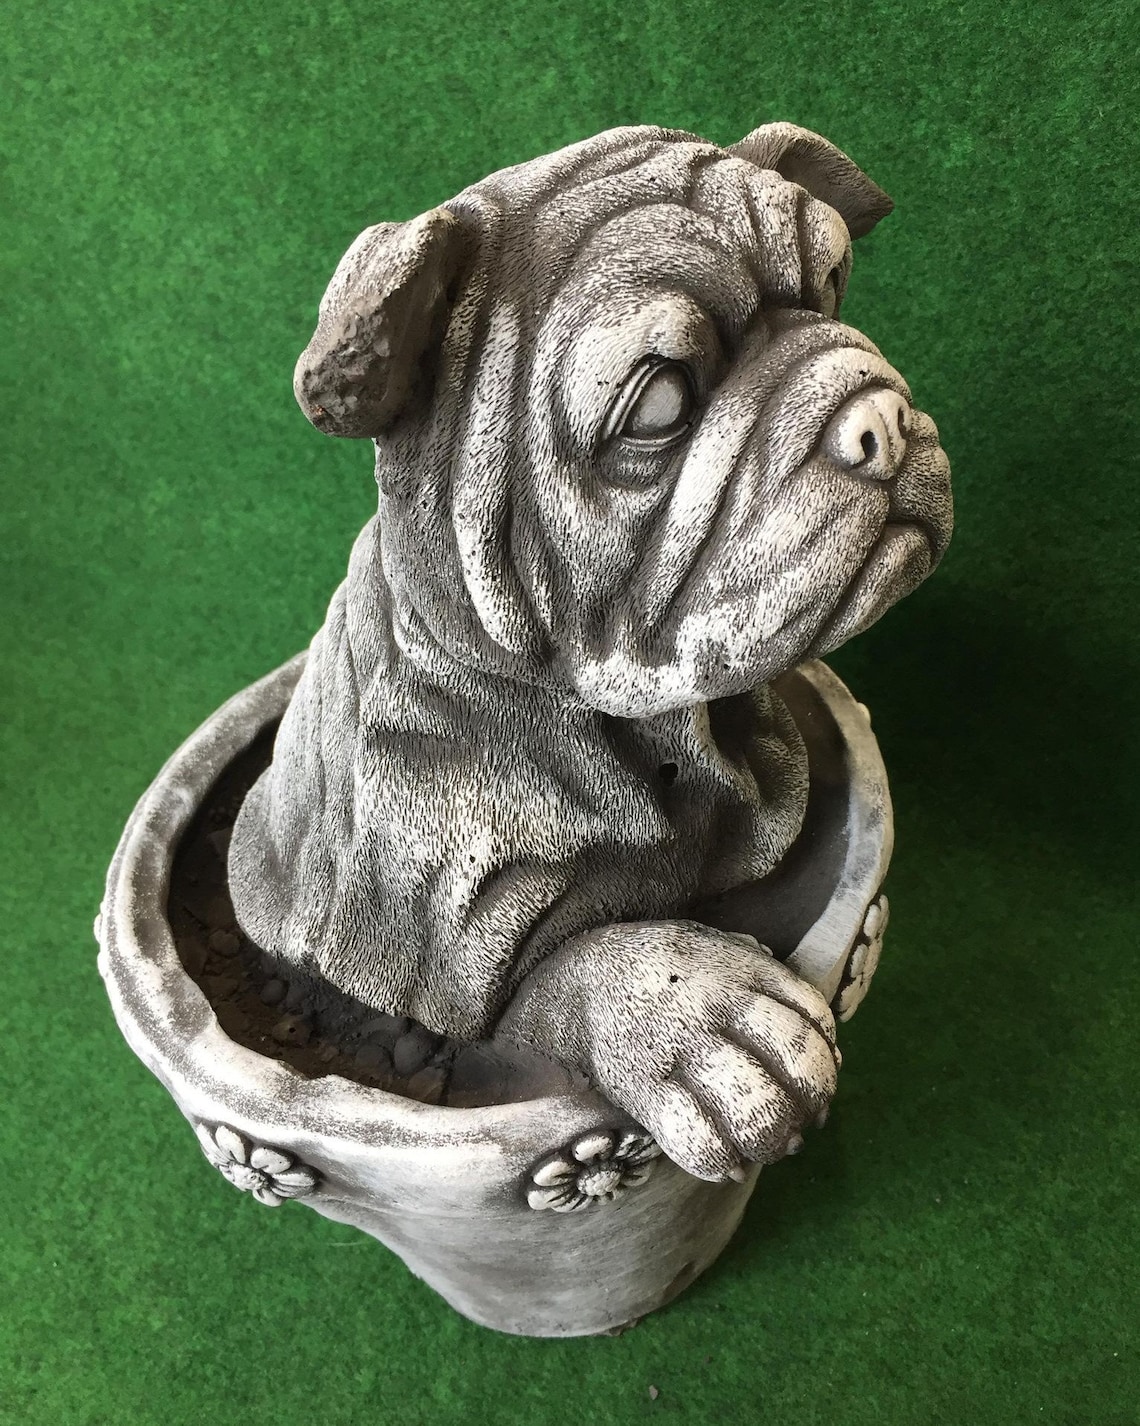 Boxer Dog In Plant Pot Concrete Garden Sculpture Lawn Ornament Etsy